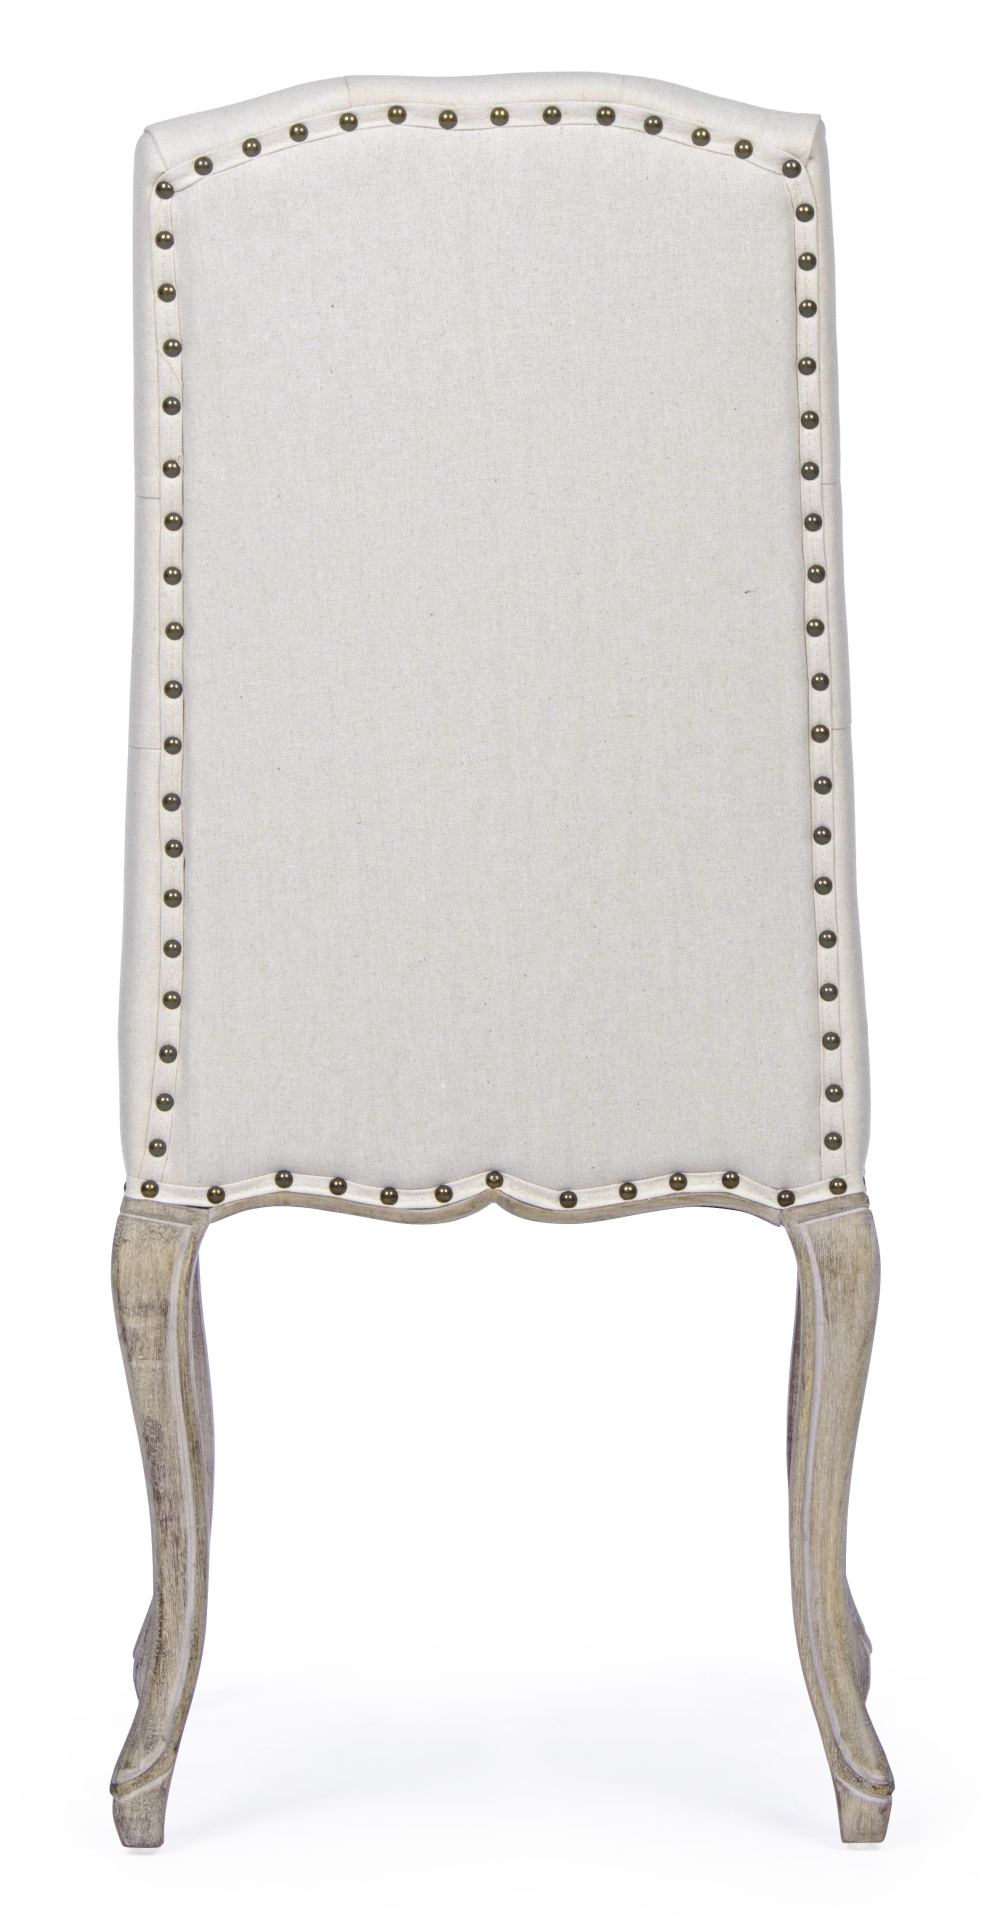 Der Esszimmerstuhl Diva überzeugt mit seinem klassischem Design. Gefertigt wurde der Stuhl aus einem Stoff-Bezug welcher aus einem Mix aus Baumwolle und Leinen ist, dieser hat einen weißen Farbton. Das Gestell ist aus Holz und ist natürlich gehalten. Die 